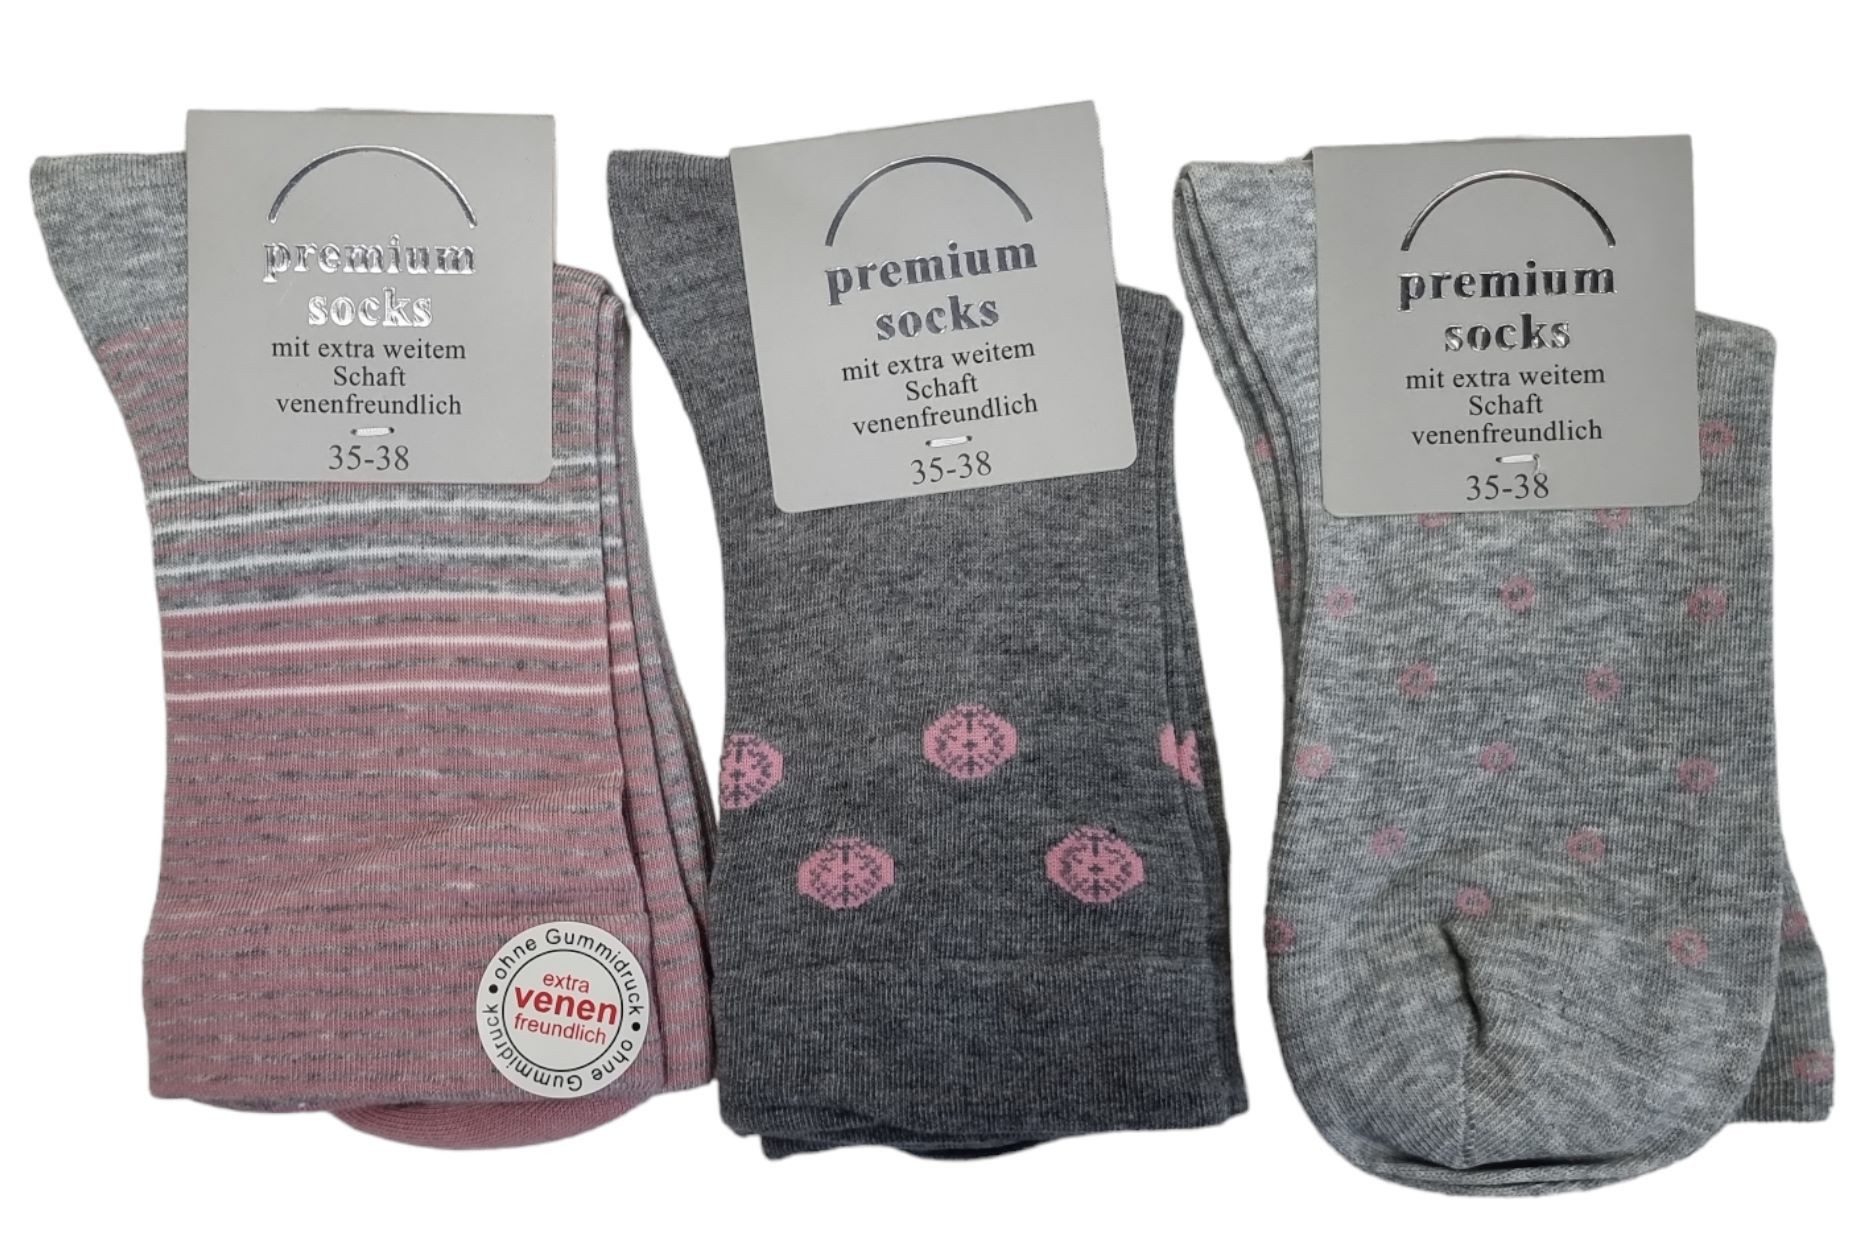 CNB Gesundheitssocken Damen Socken mit extra weitem Schaft,venenfreundlich, 3er Pack (Packung, 3 Paar)